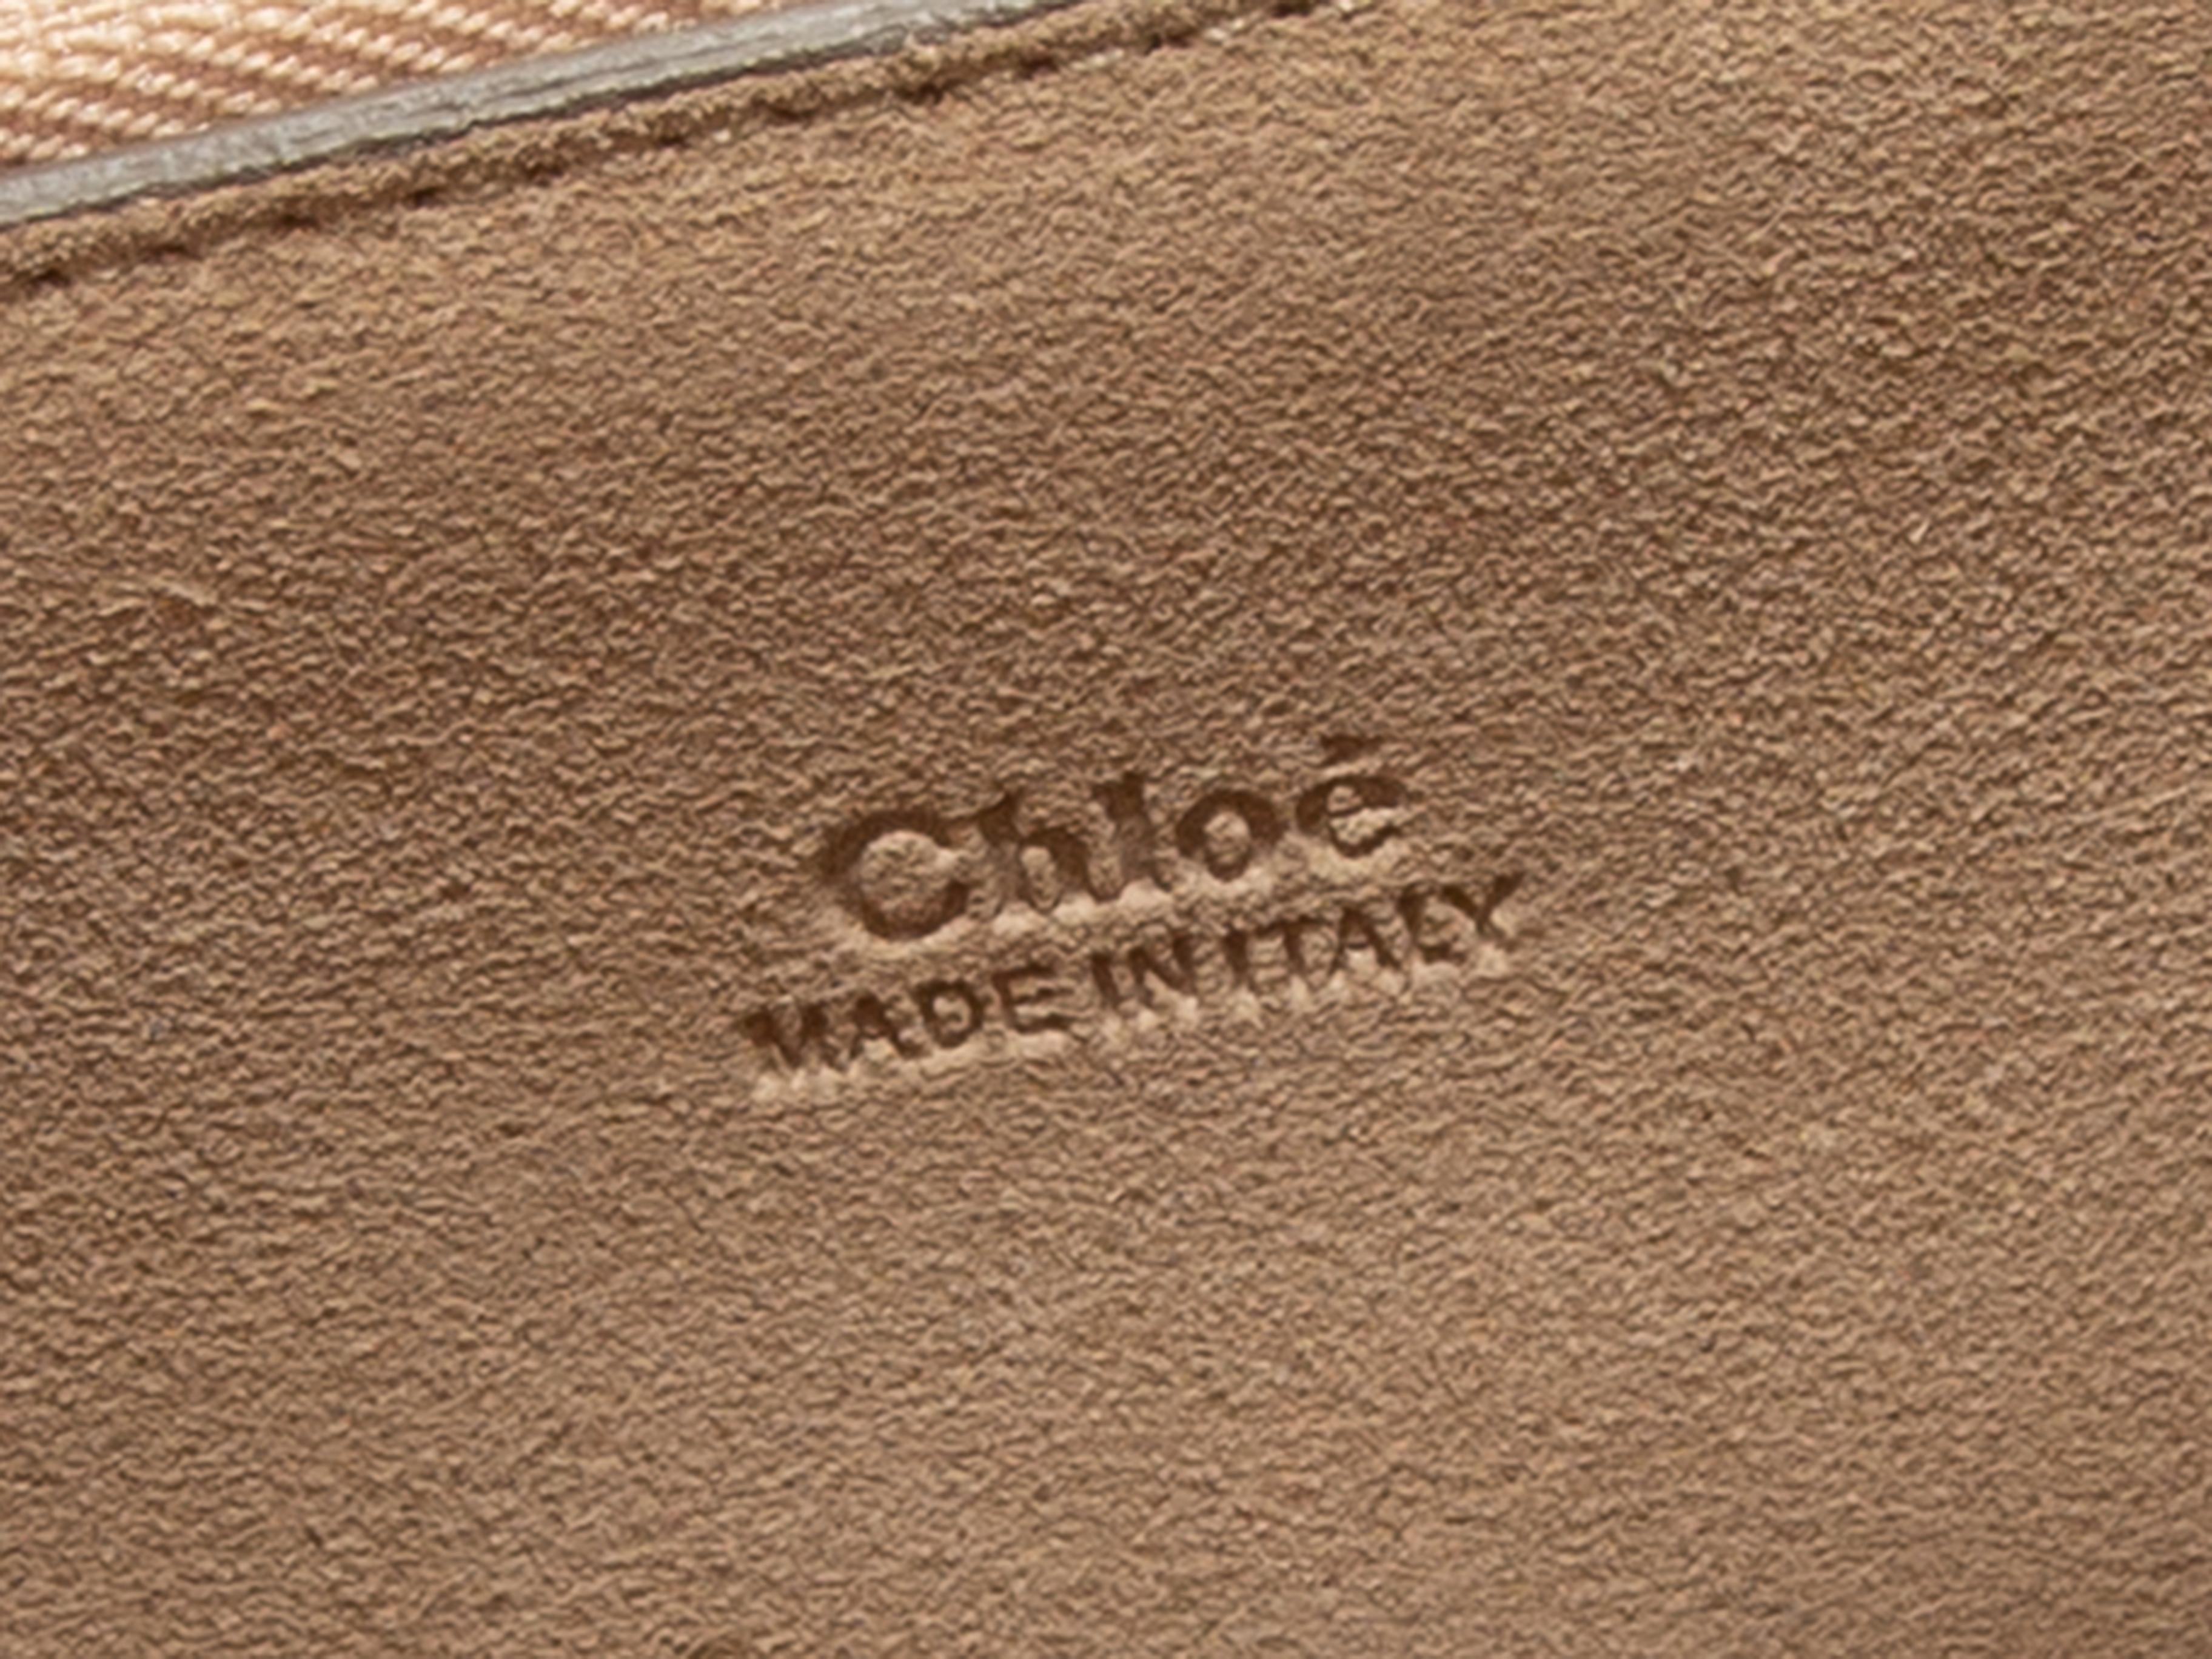 Product details: Beige suede Faye crossbody bag by Chloe. Gold-tone hardware. Adjustable shoulder strap. 12